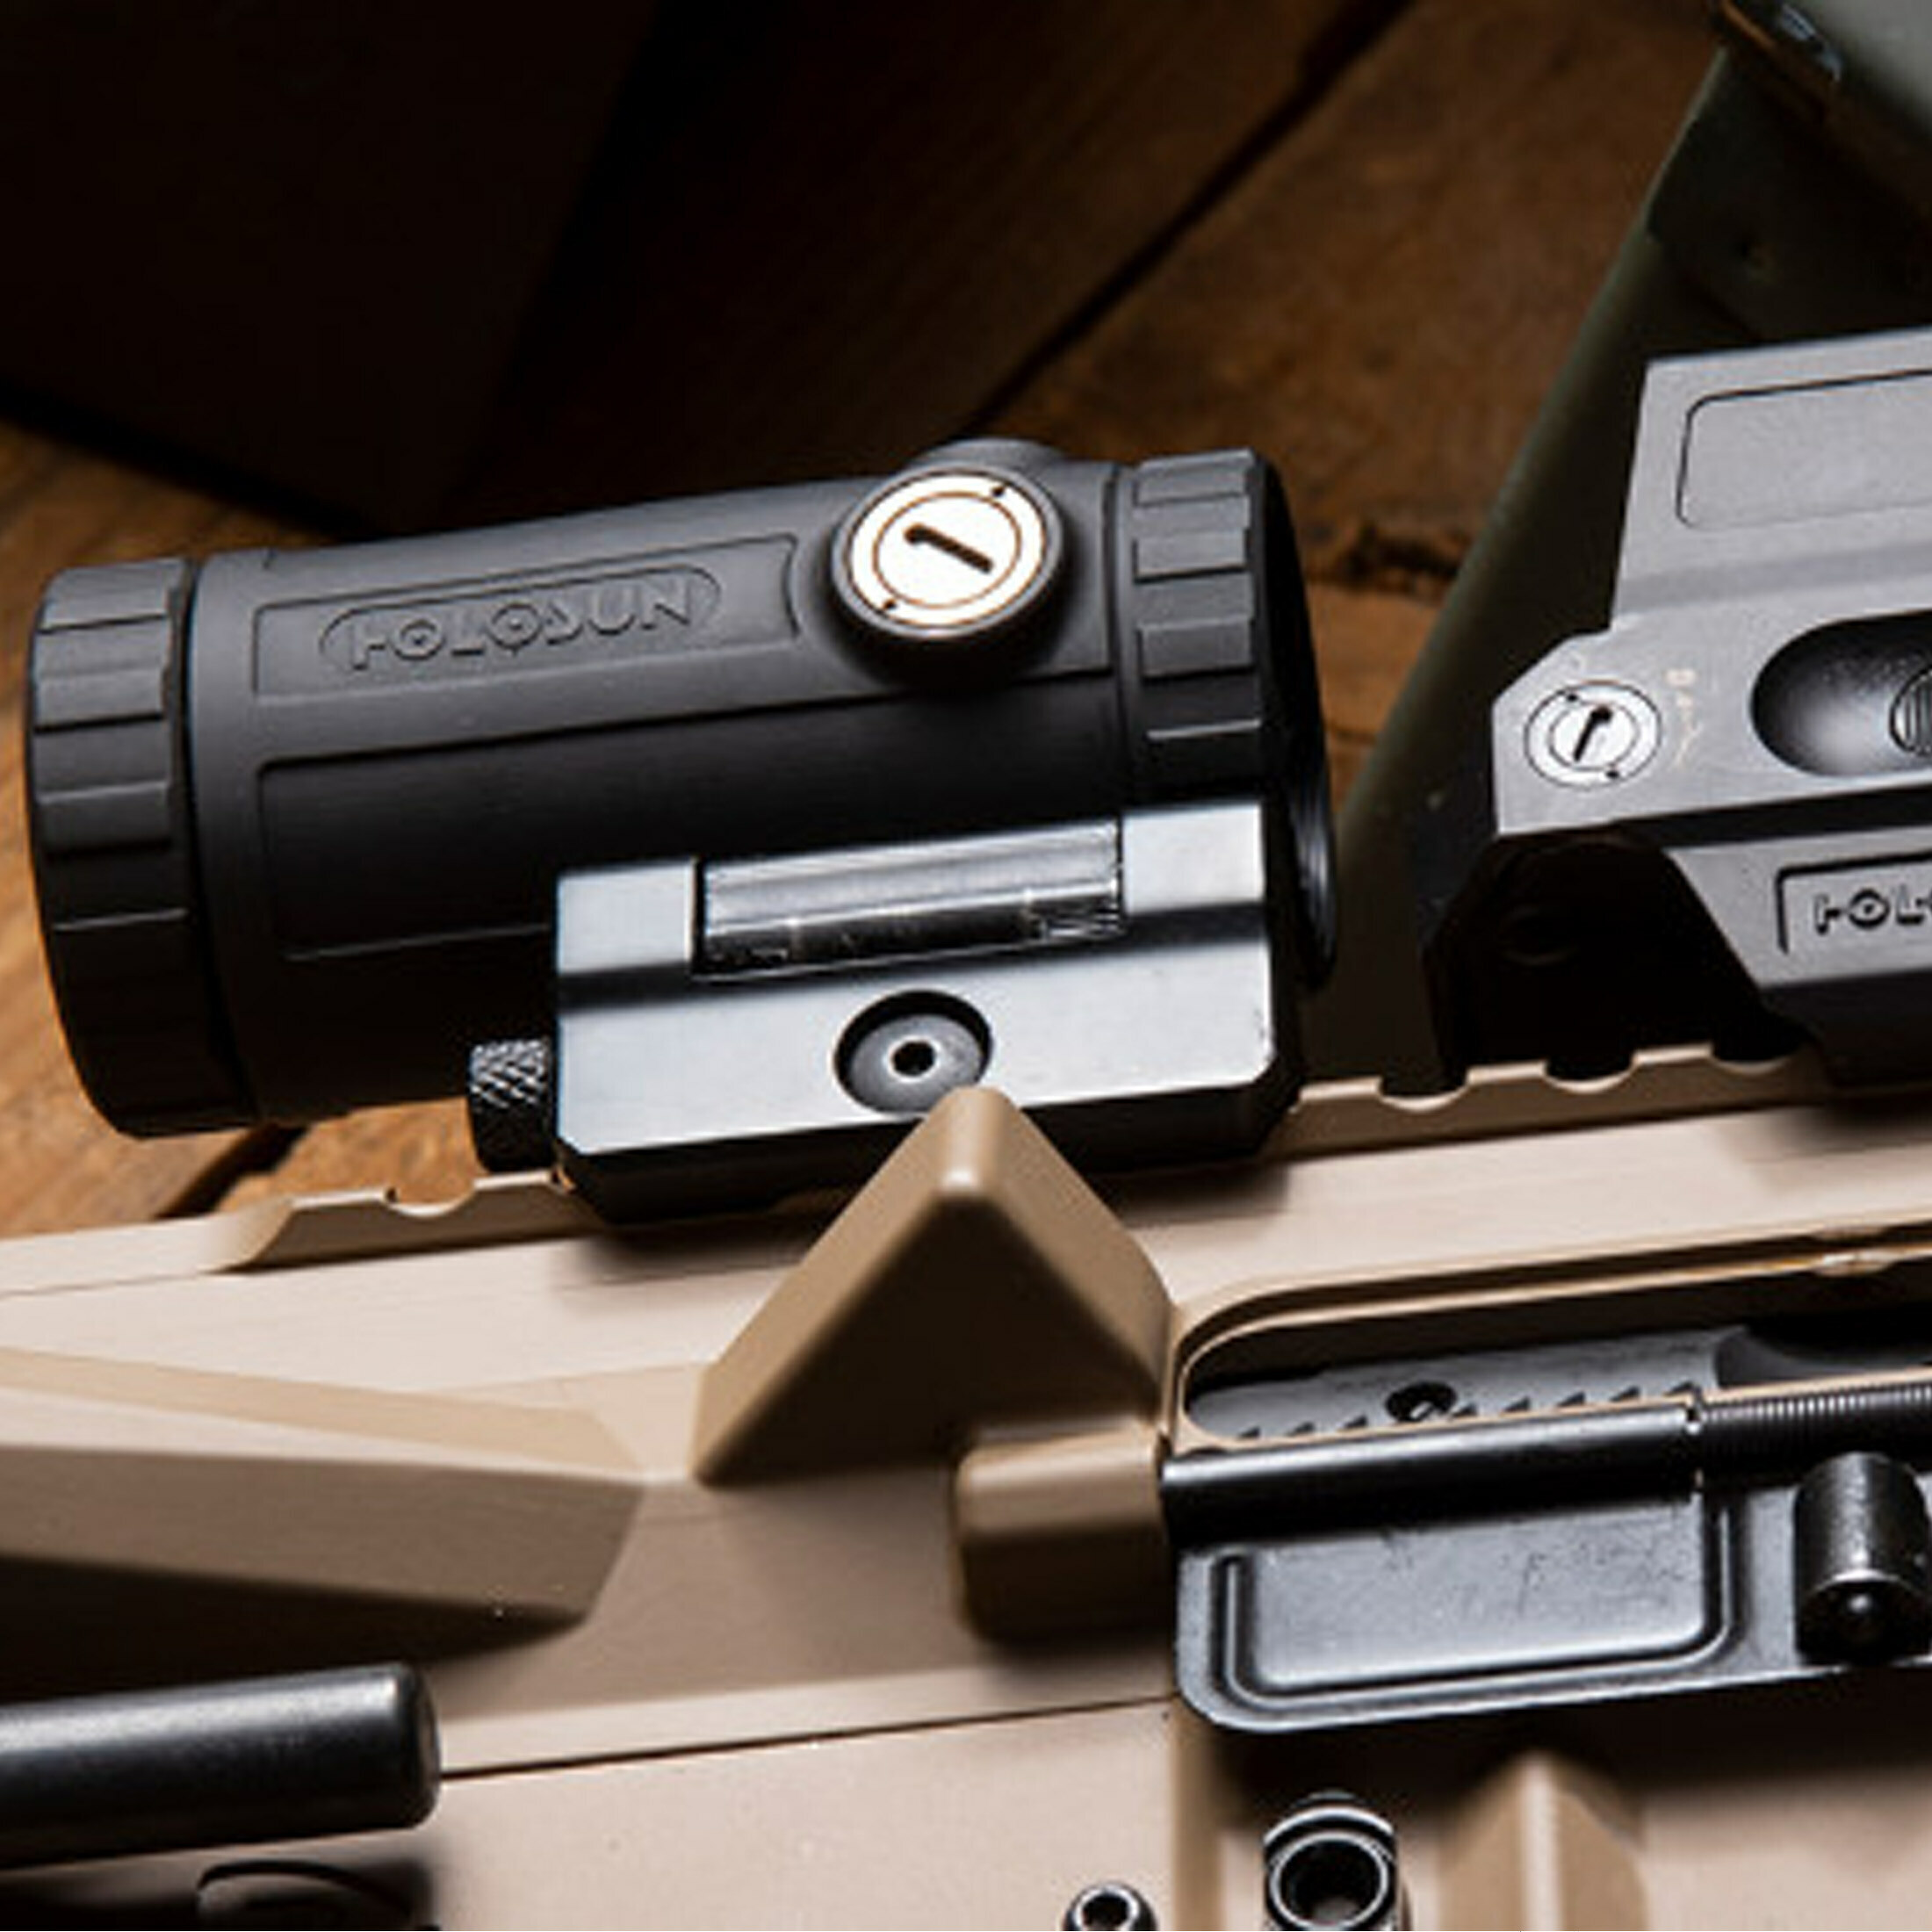 Holosun Magnifier HM3XT (TITAN) mit 3 fach Vergrößerung, schwarz, Picatinny, Jagd, Sportschießen, S…